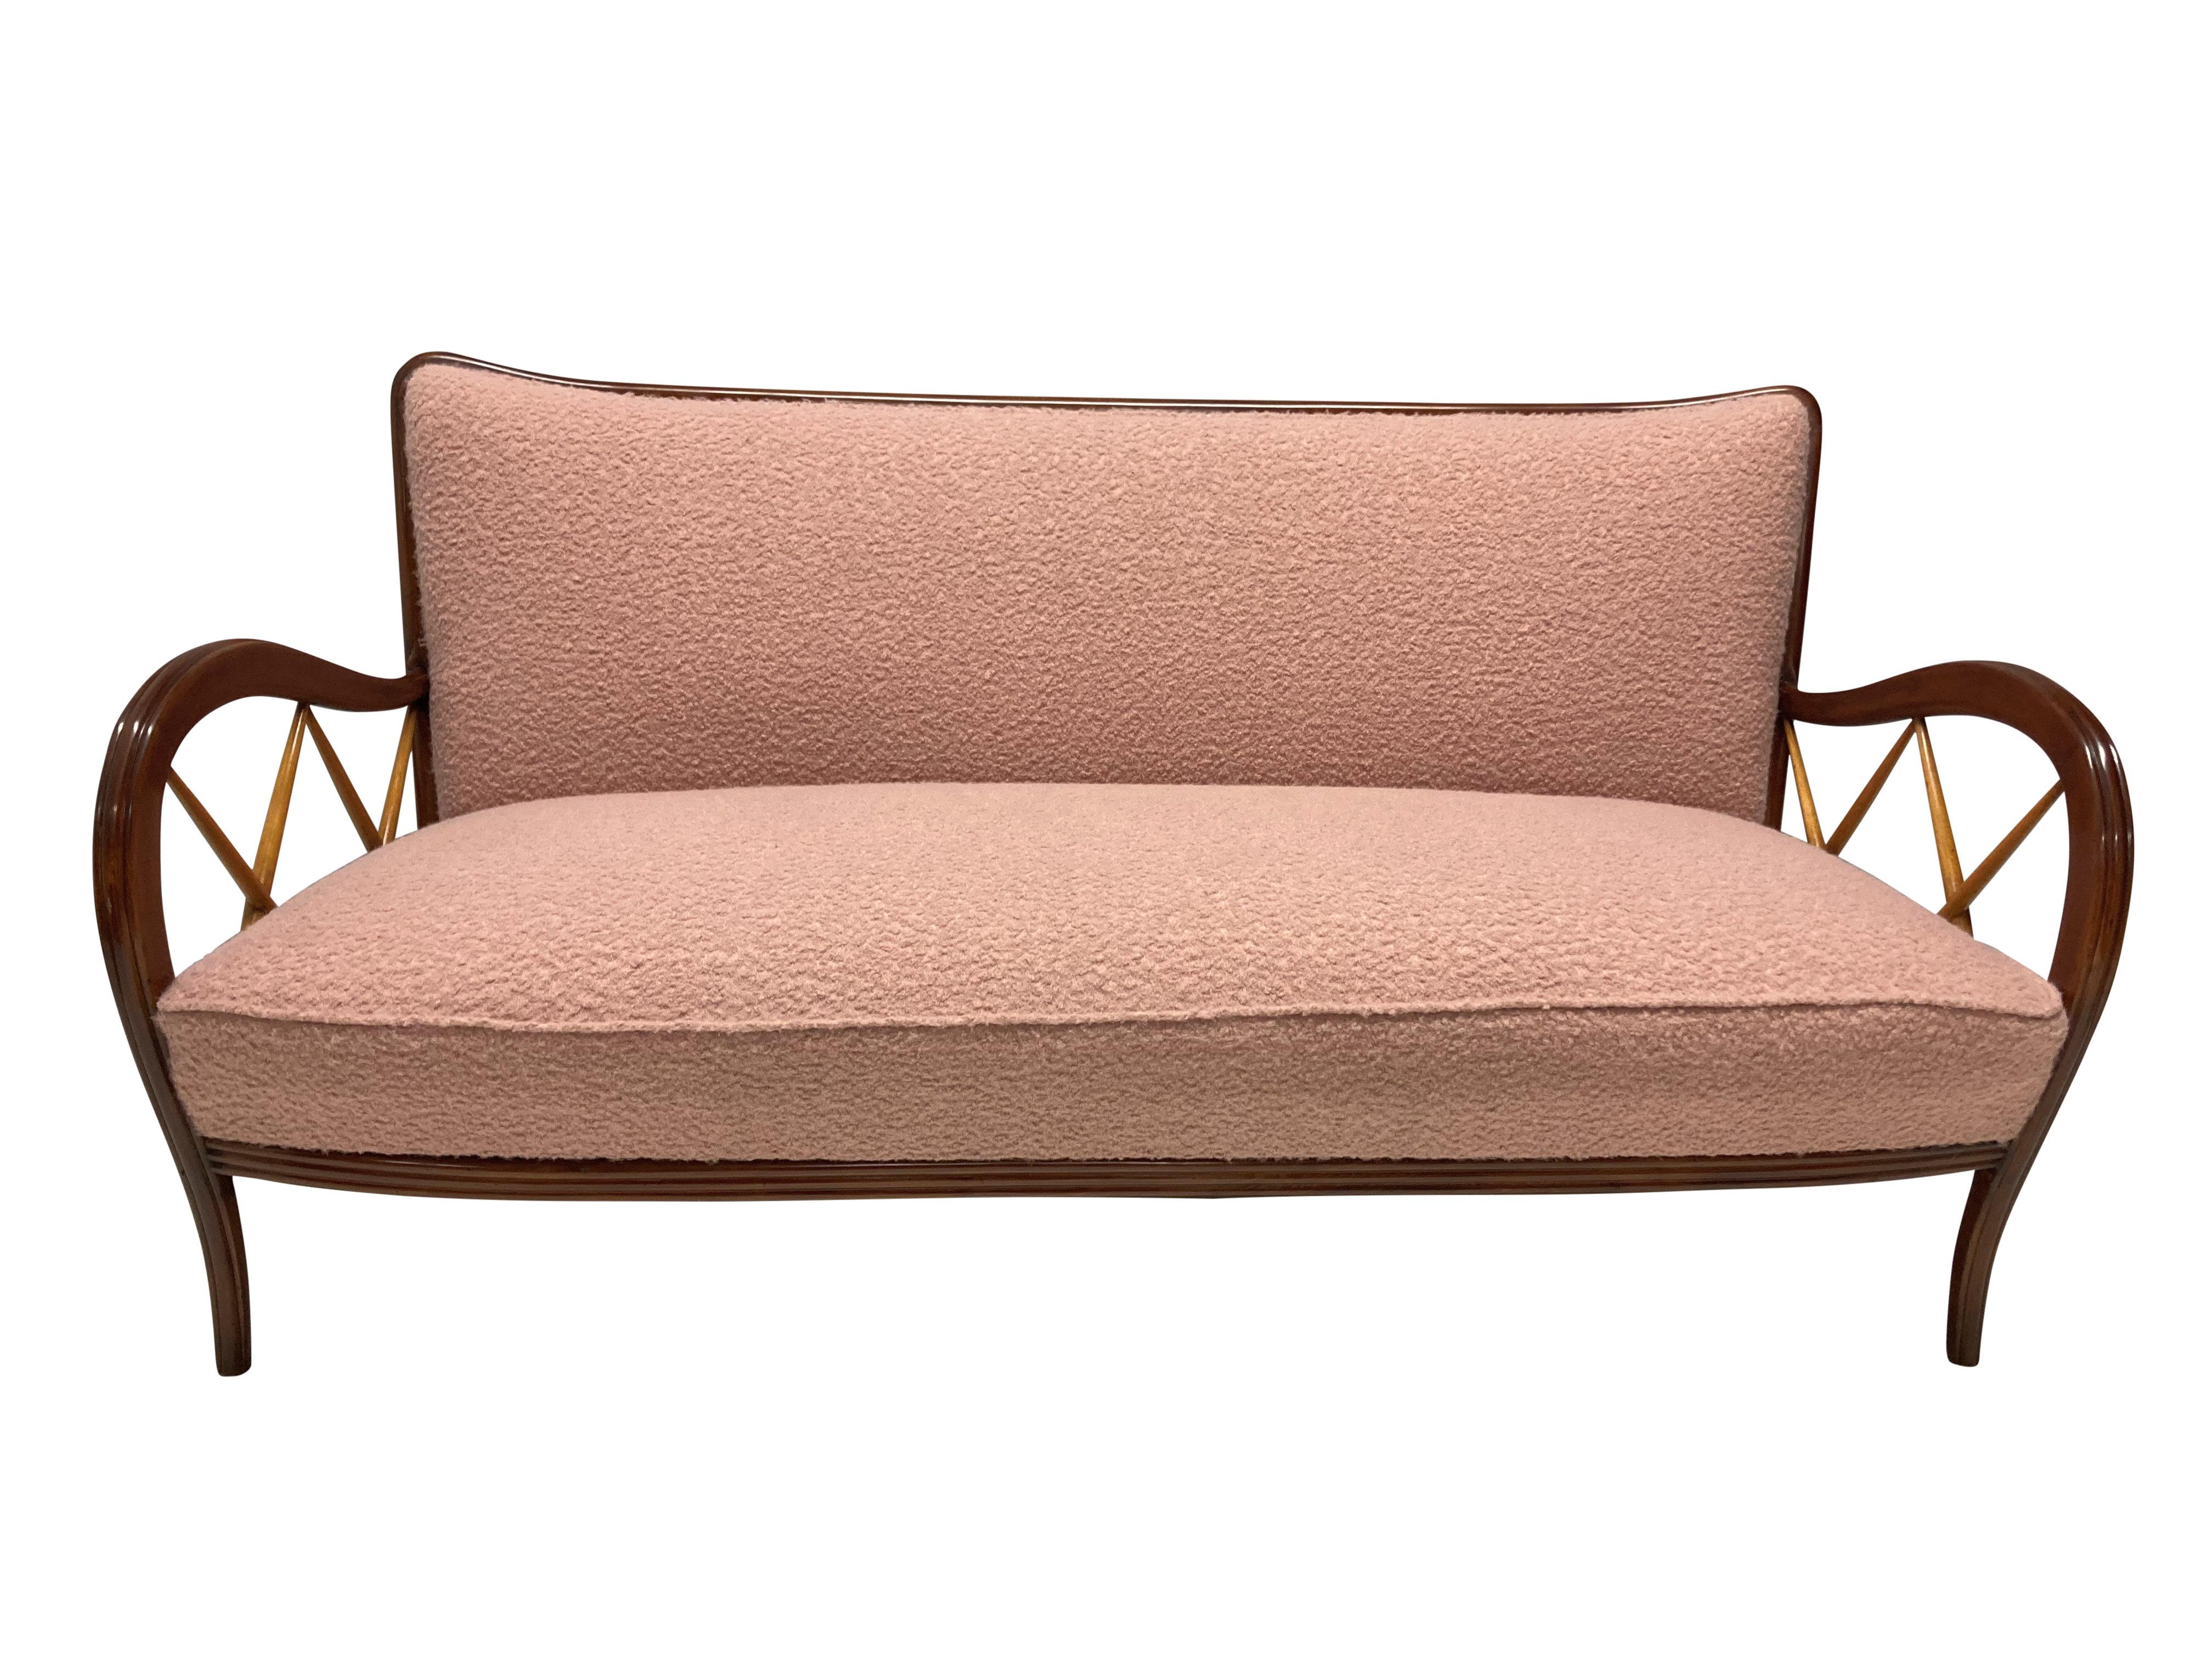 Ein stilvolles italienisches Sofa von Paolo Buffa. Aus Nussbaum und Blondholz und neu gepolstert mit staubrosa Bouclé. En suite mit einem Paar passender Sessel.